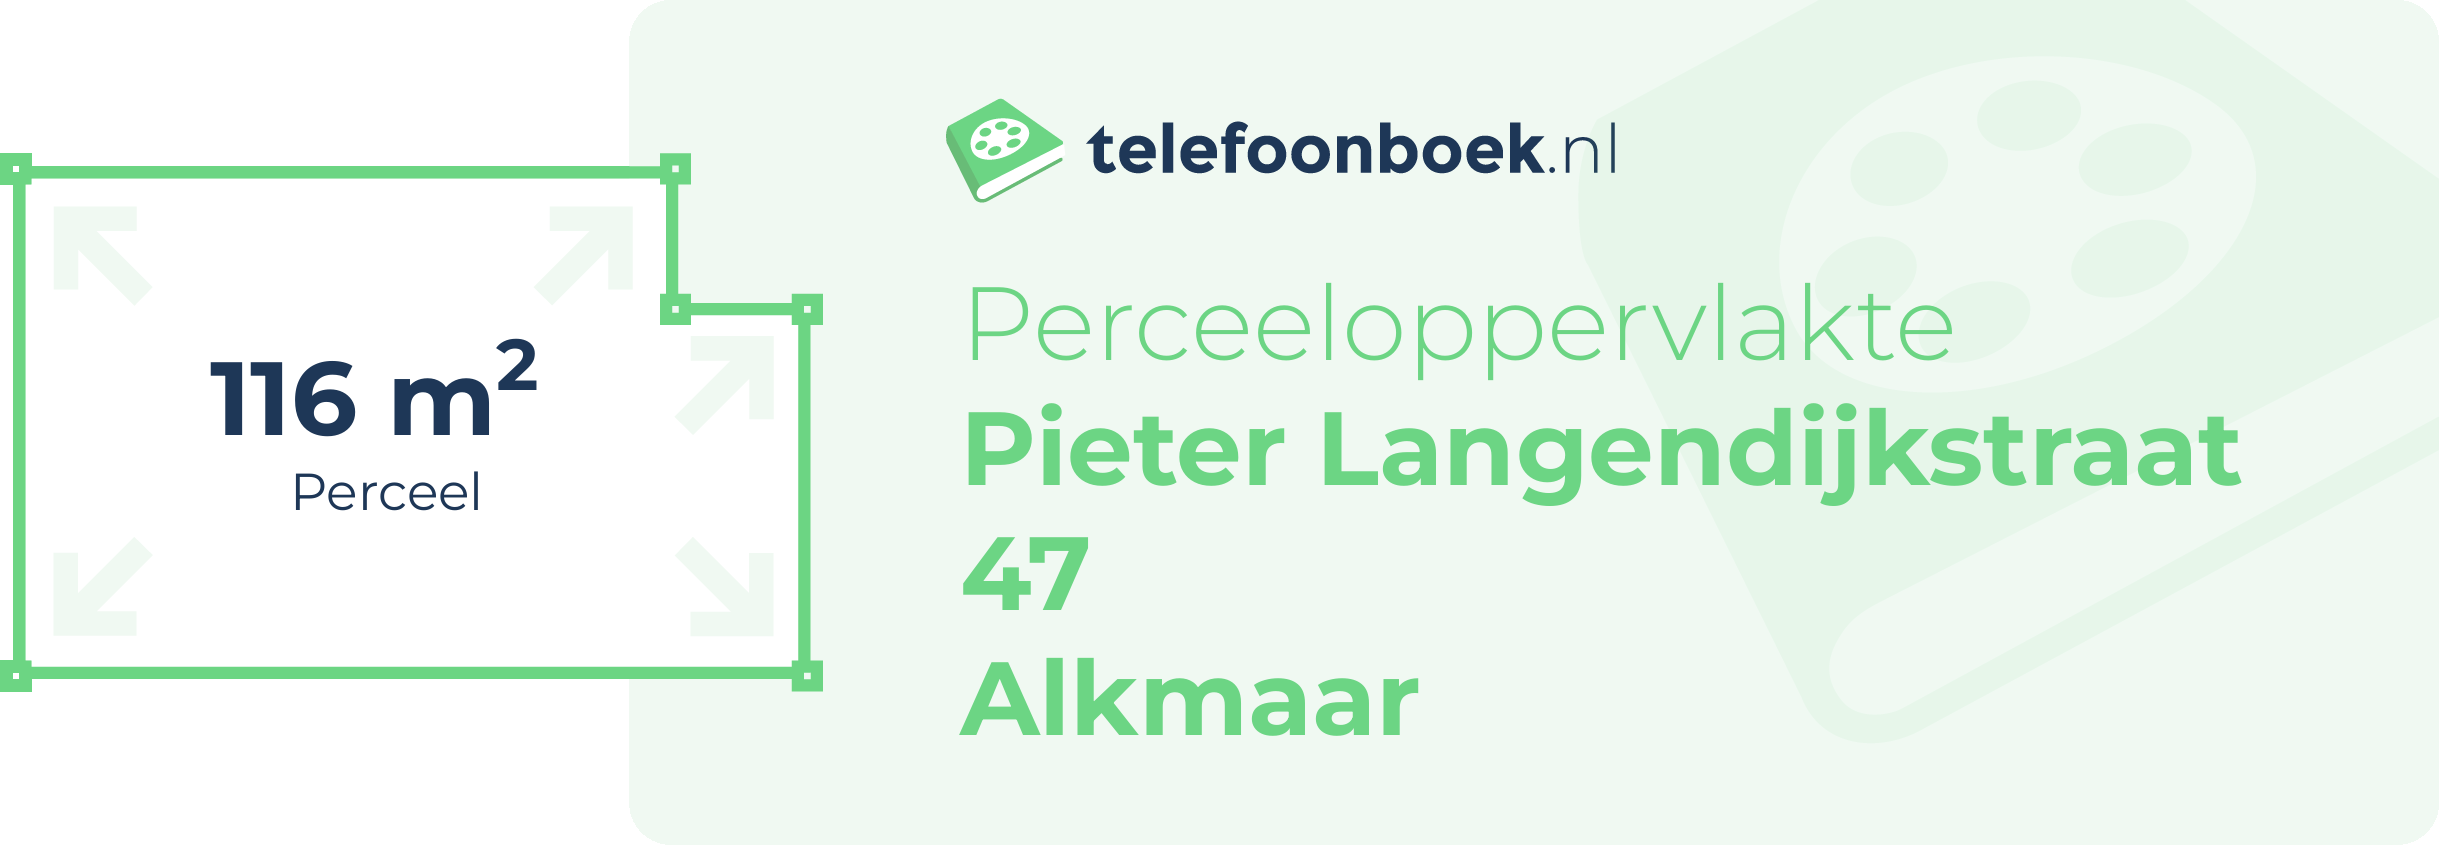 Perceeloppervlakte Pieter Langendijkstraat 47 Alkmaar